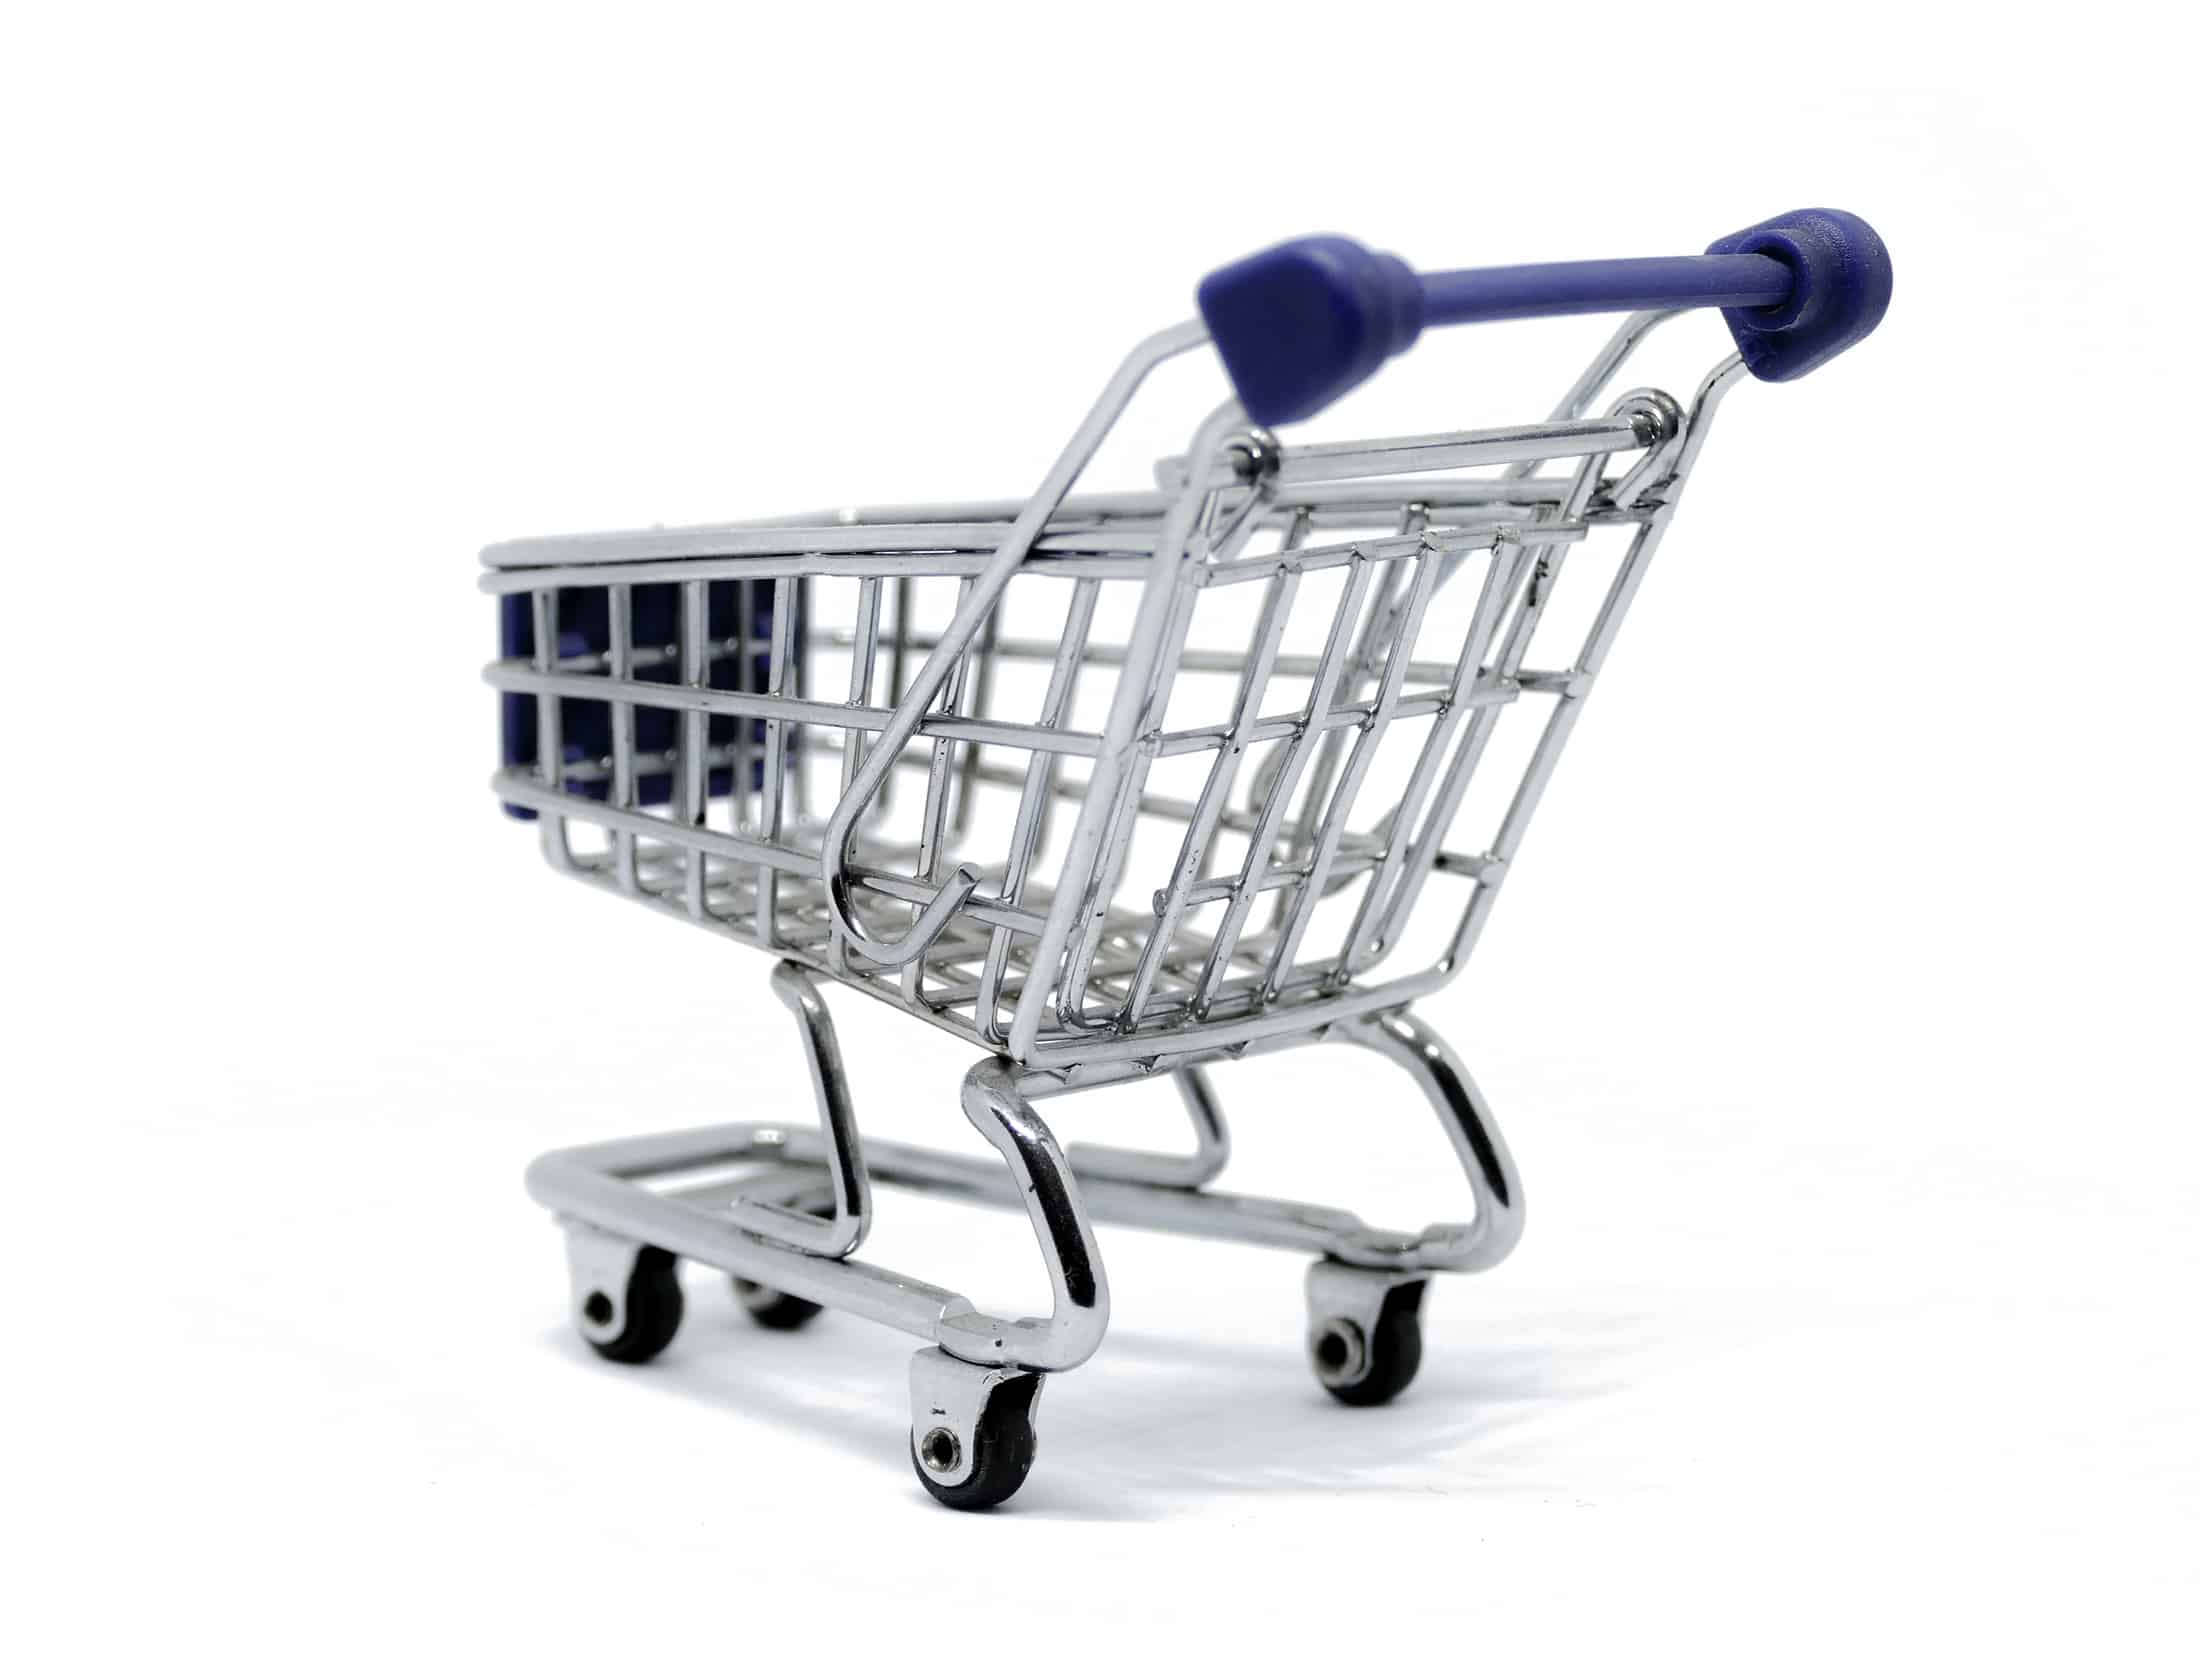 Online Shop / Webshop - Ihre Agentur für E-Commerce